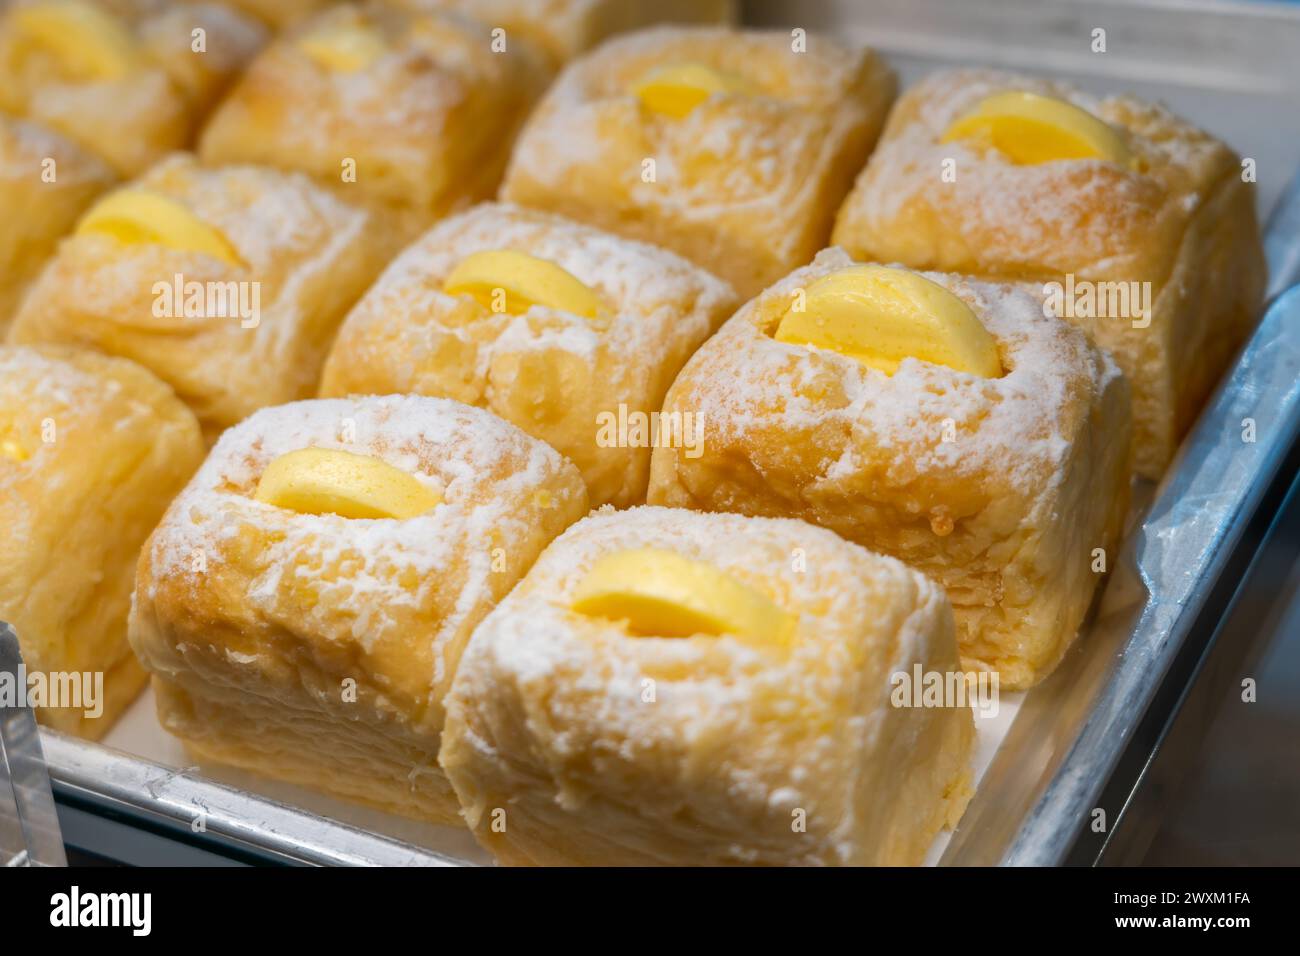 Petits pains luxuriants saupoudrés de sucre en poudre et un morceau de beurre, fruits, fromage beau dans une vitrine de boulangerie. Banque D'Images